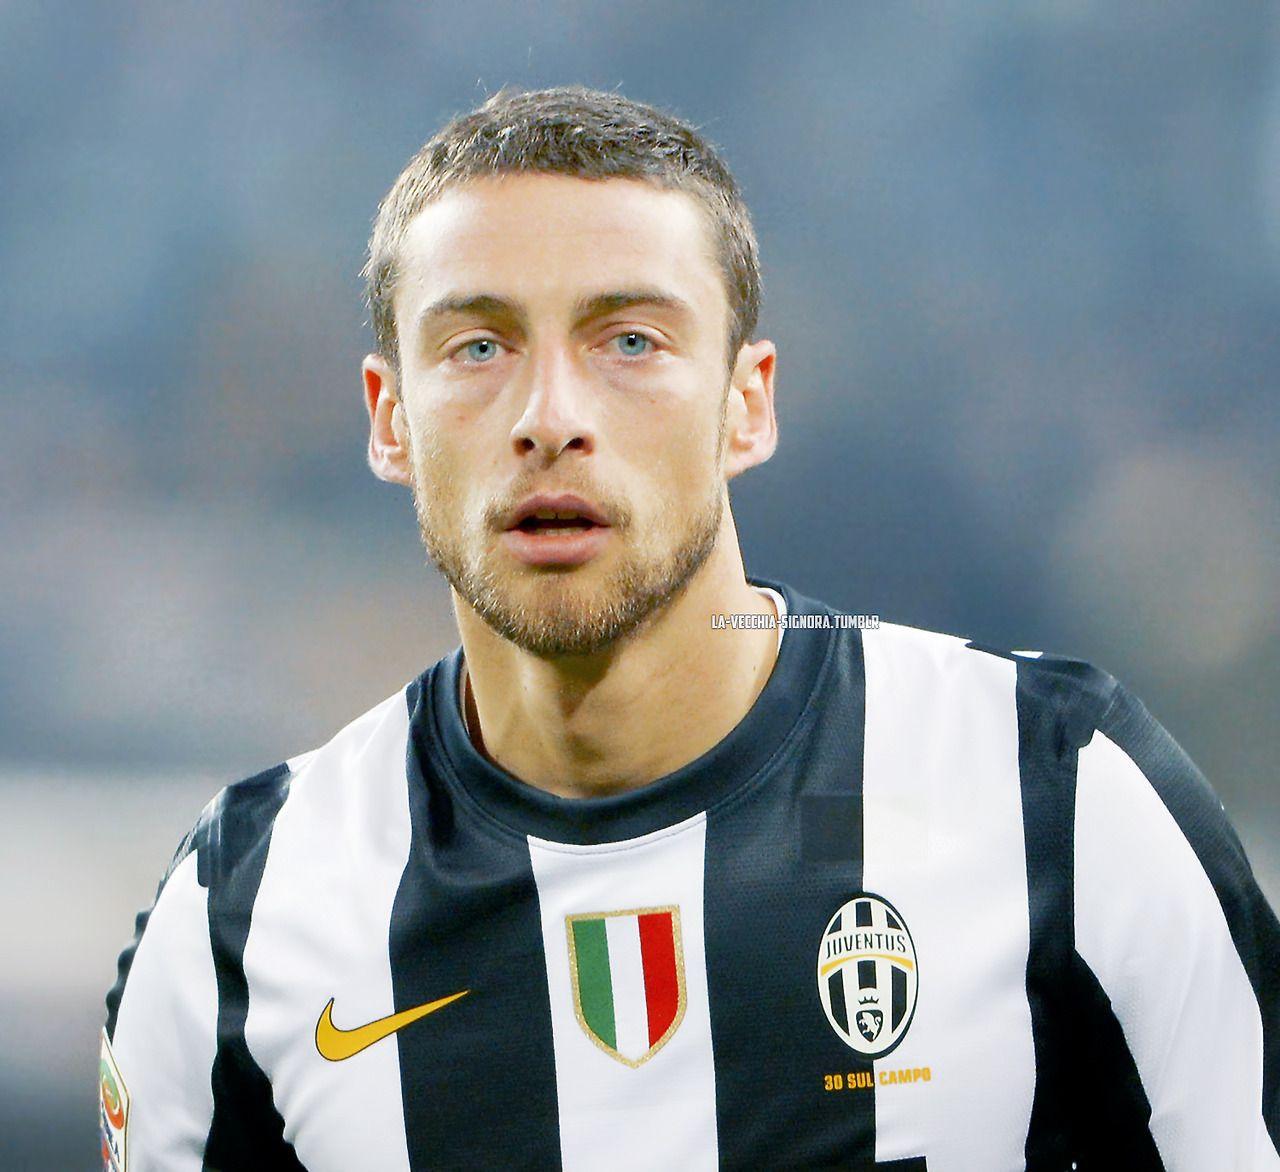 Claudio Marchisio image Claudio Marchisio new hair Juventus 2013